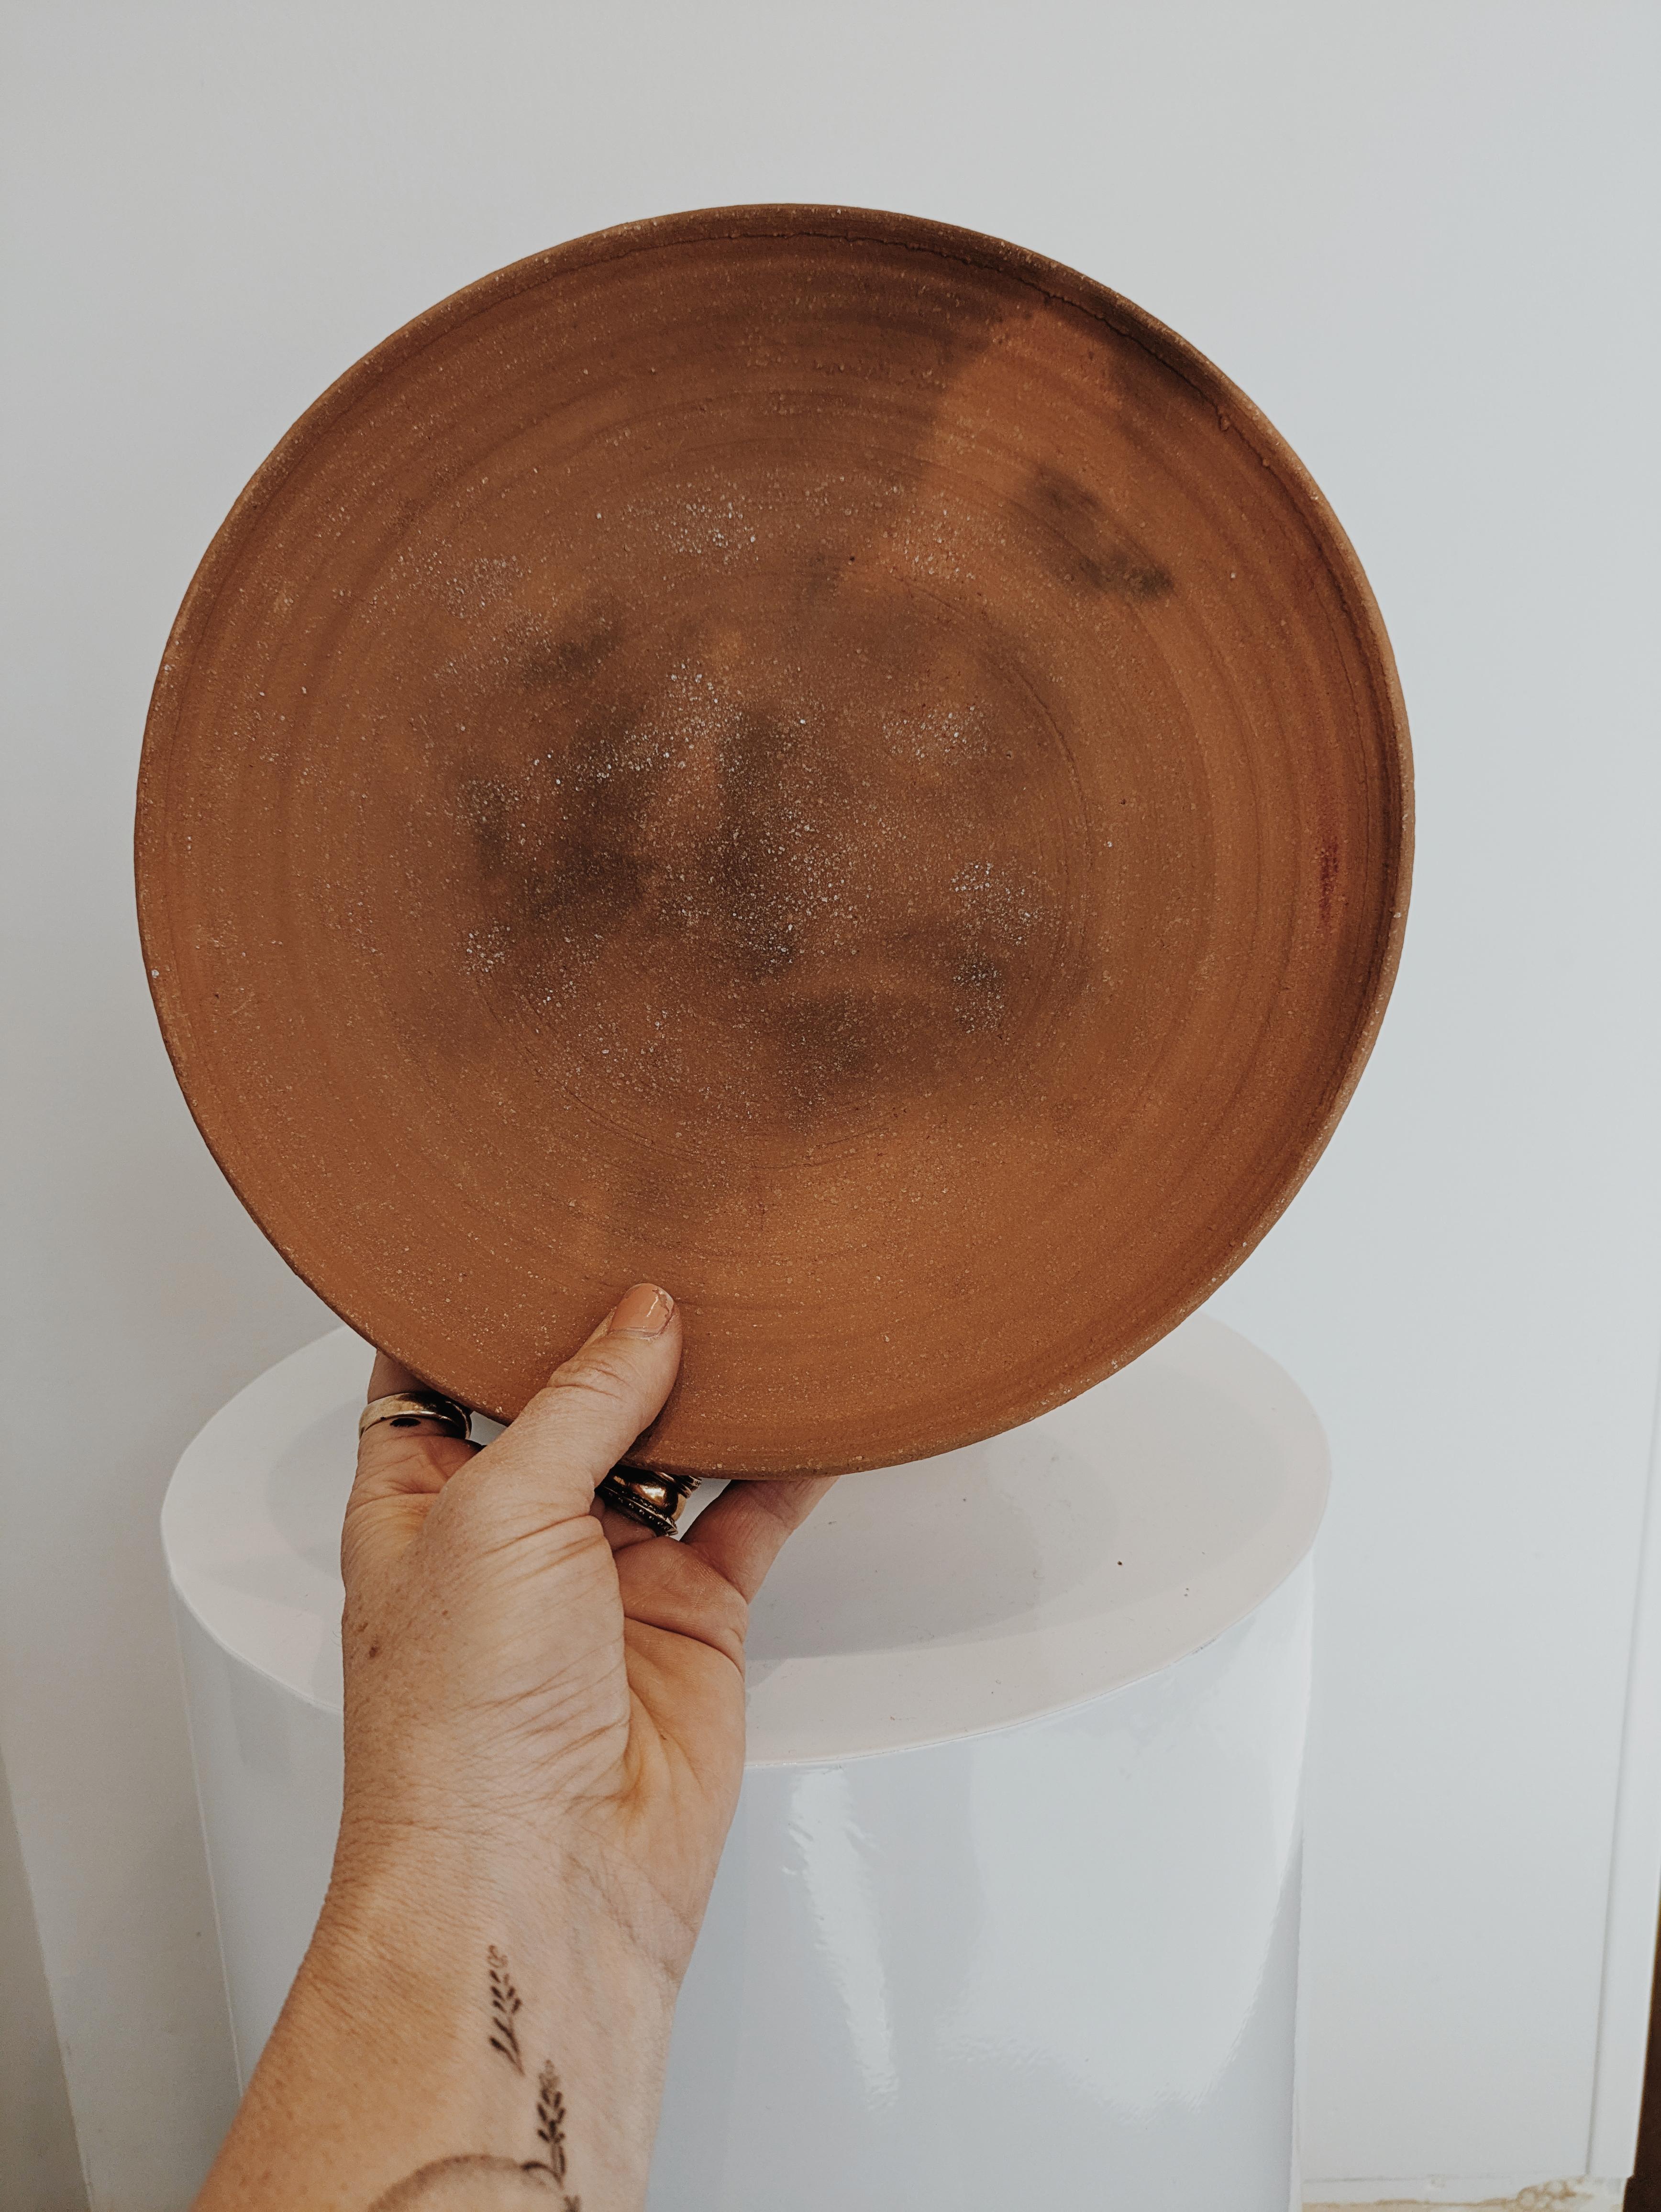 Inspirée par l'art ancien de la cuisson des céramiques dans une fosse en terre, la dernière collection de céramiques cuites en fosse d'Erin Hupp est un ensemble d'œuvres qui n'arrive qu'une fois dans une décennie (ou dans une vie).

Chaque pièce est